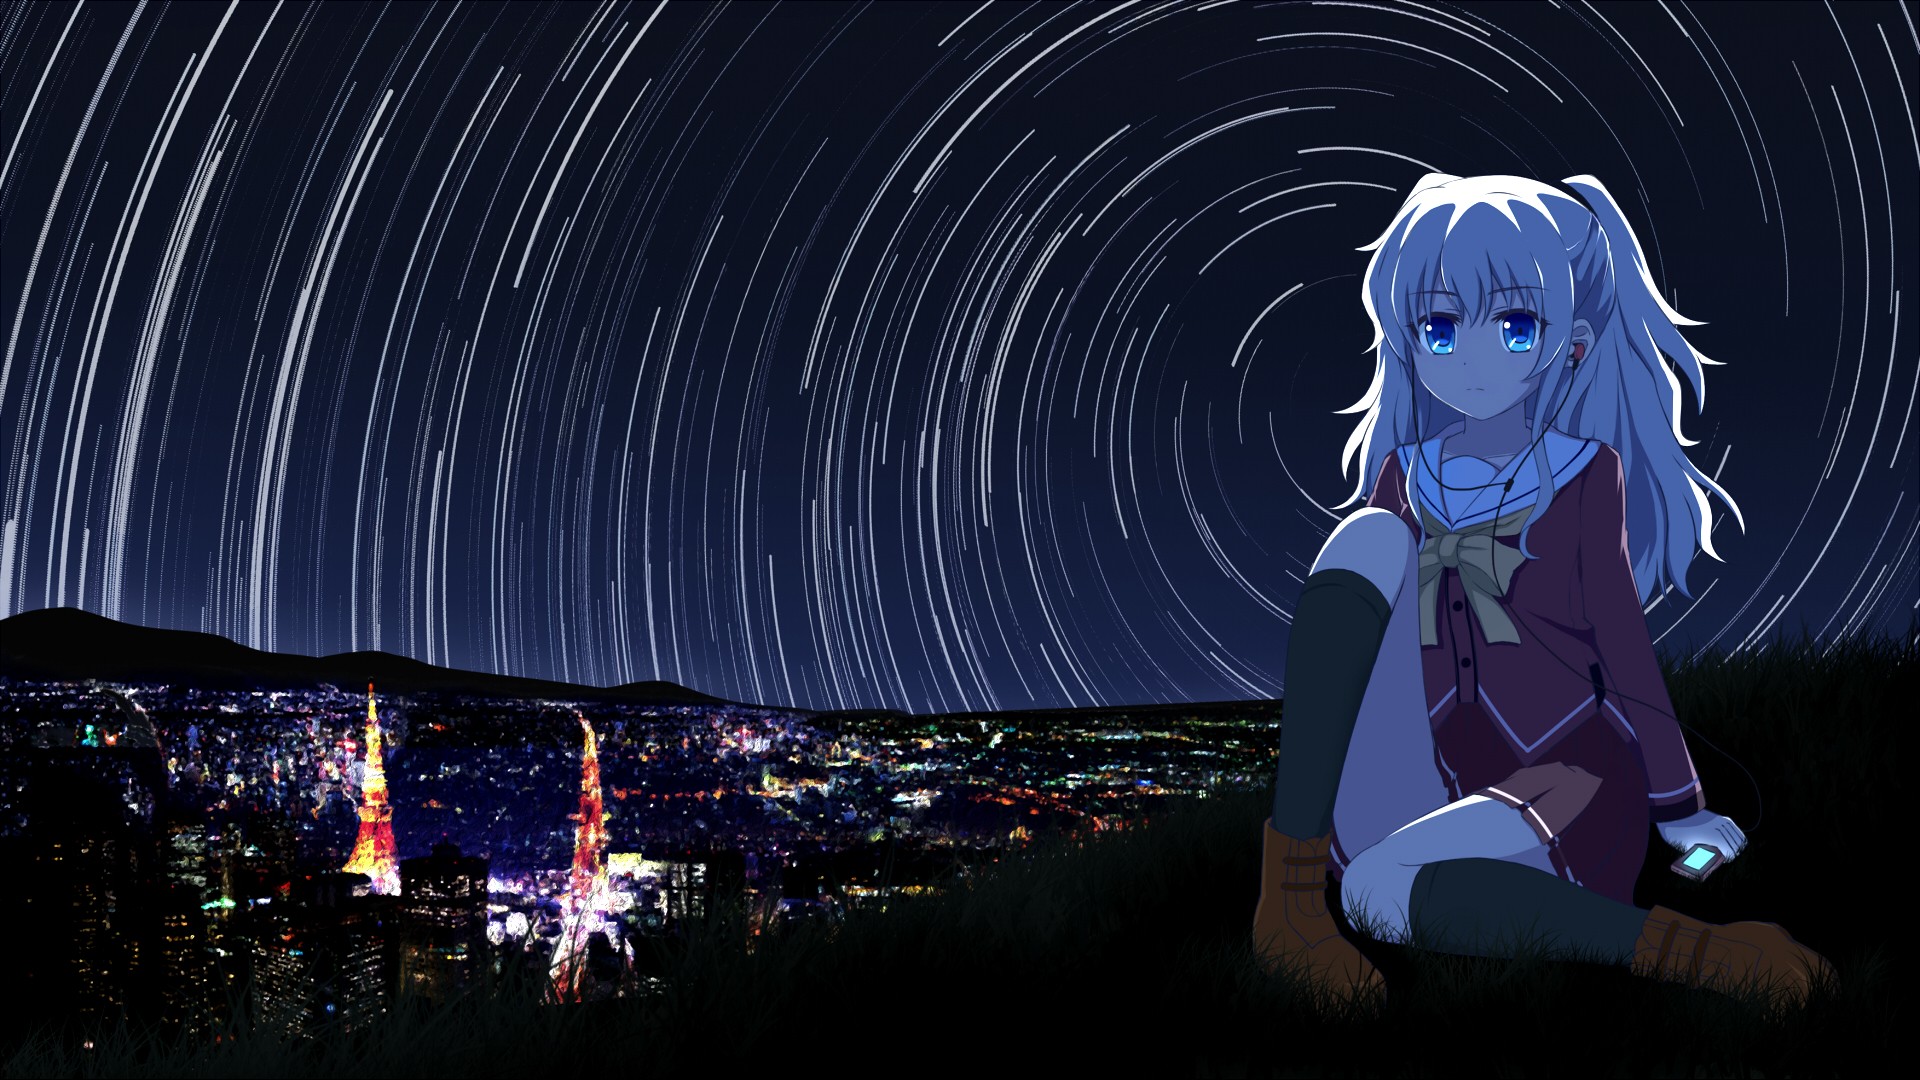 Anime Charlotte Backgrounds | PixelsTalk.Net